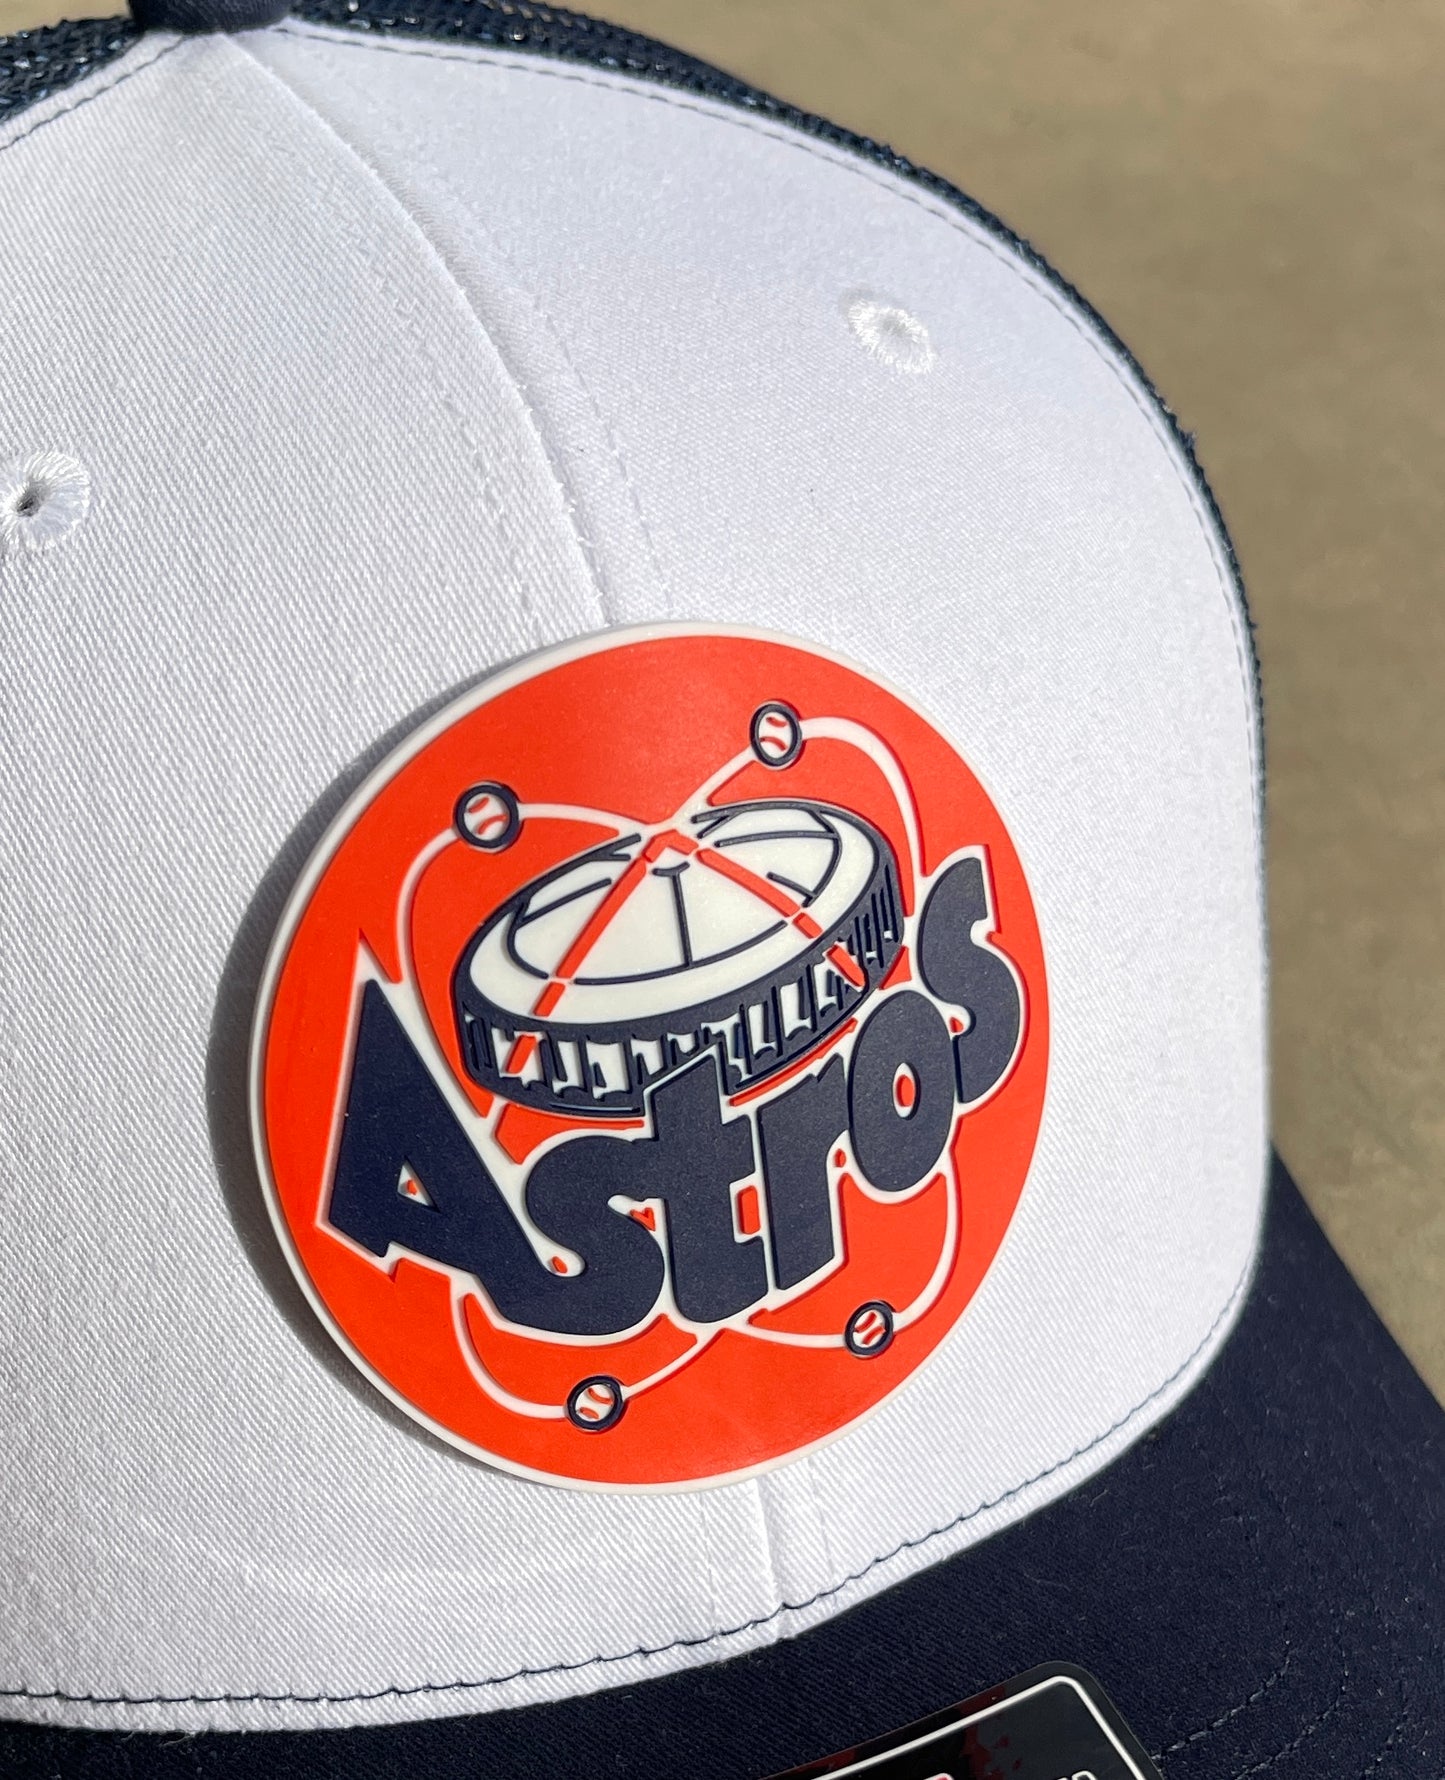 Astros Retro Astrodome 3D Snapback Seven-Panel Trucker Hat- Brown/ Khaki - Ten Gallon Hat Co.